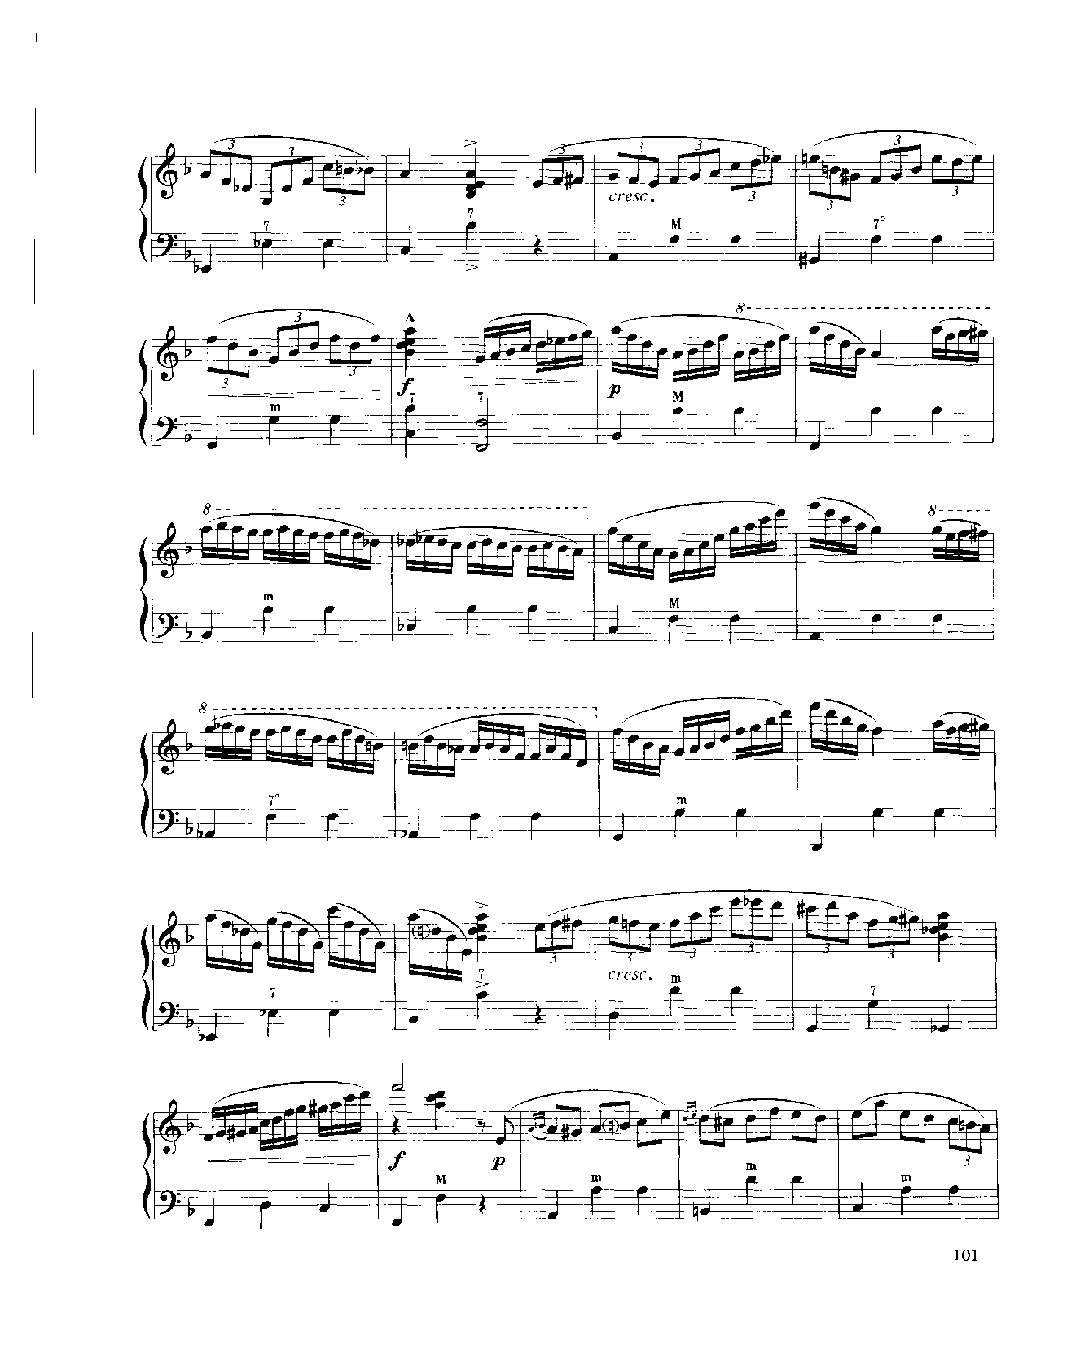 现代手风琴流行乐曲《嬉游曲》[法]A.阿斯蒂尔曲